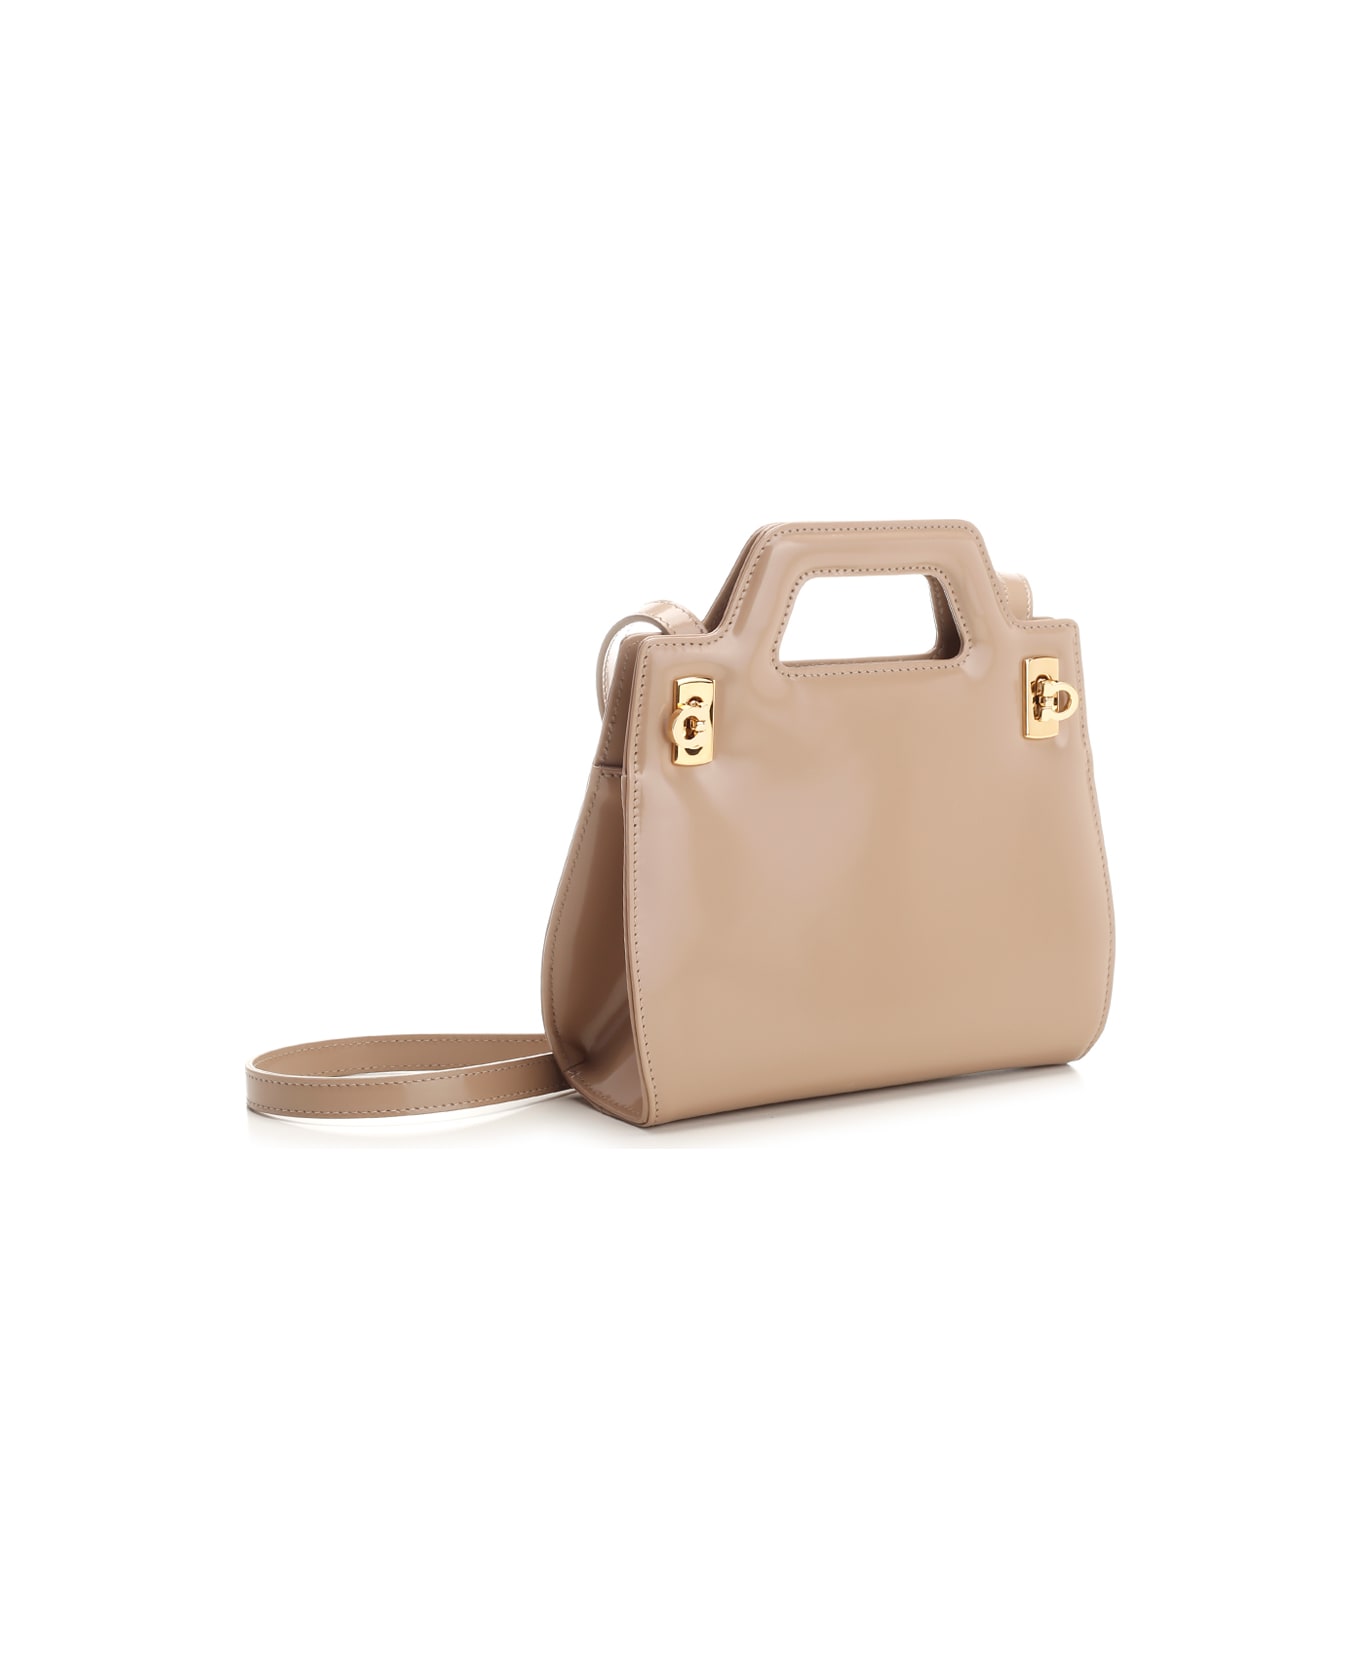 Ferragamo 'wanda' Mini Handbag - Beige